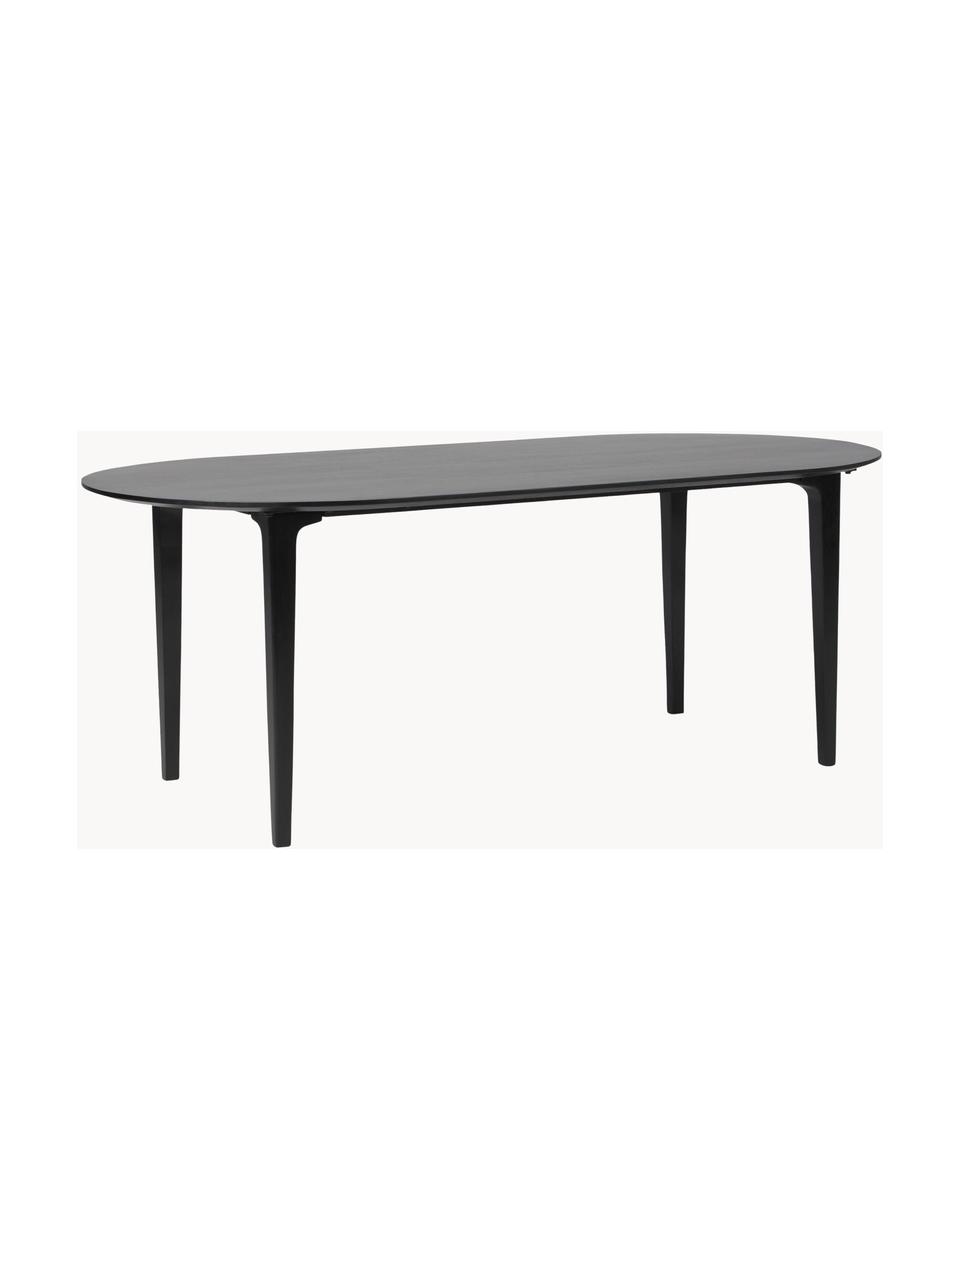 Oválny jedálenský stôl z masívneho mangového dreva Archie, 200 x 100 cm, Masívne mangové drevo, lakované, Mangové drevo, čierne lakované, Š 200 x H 100 cm